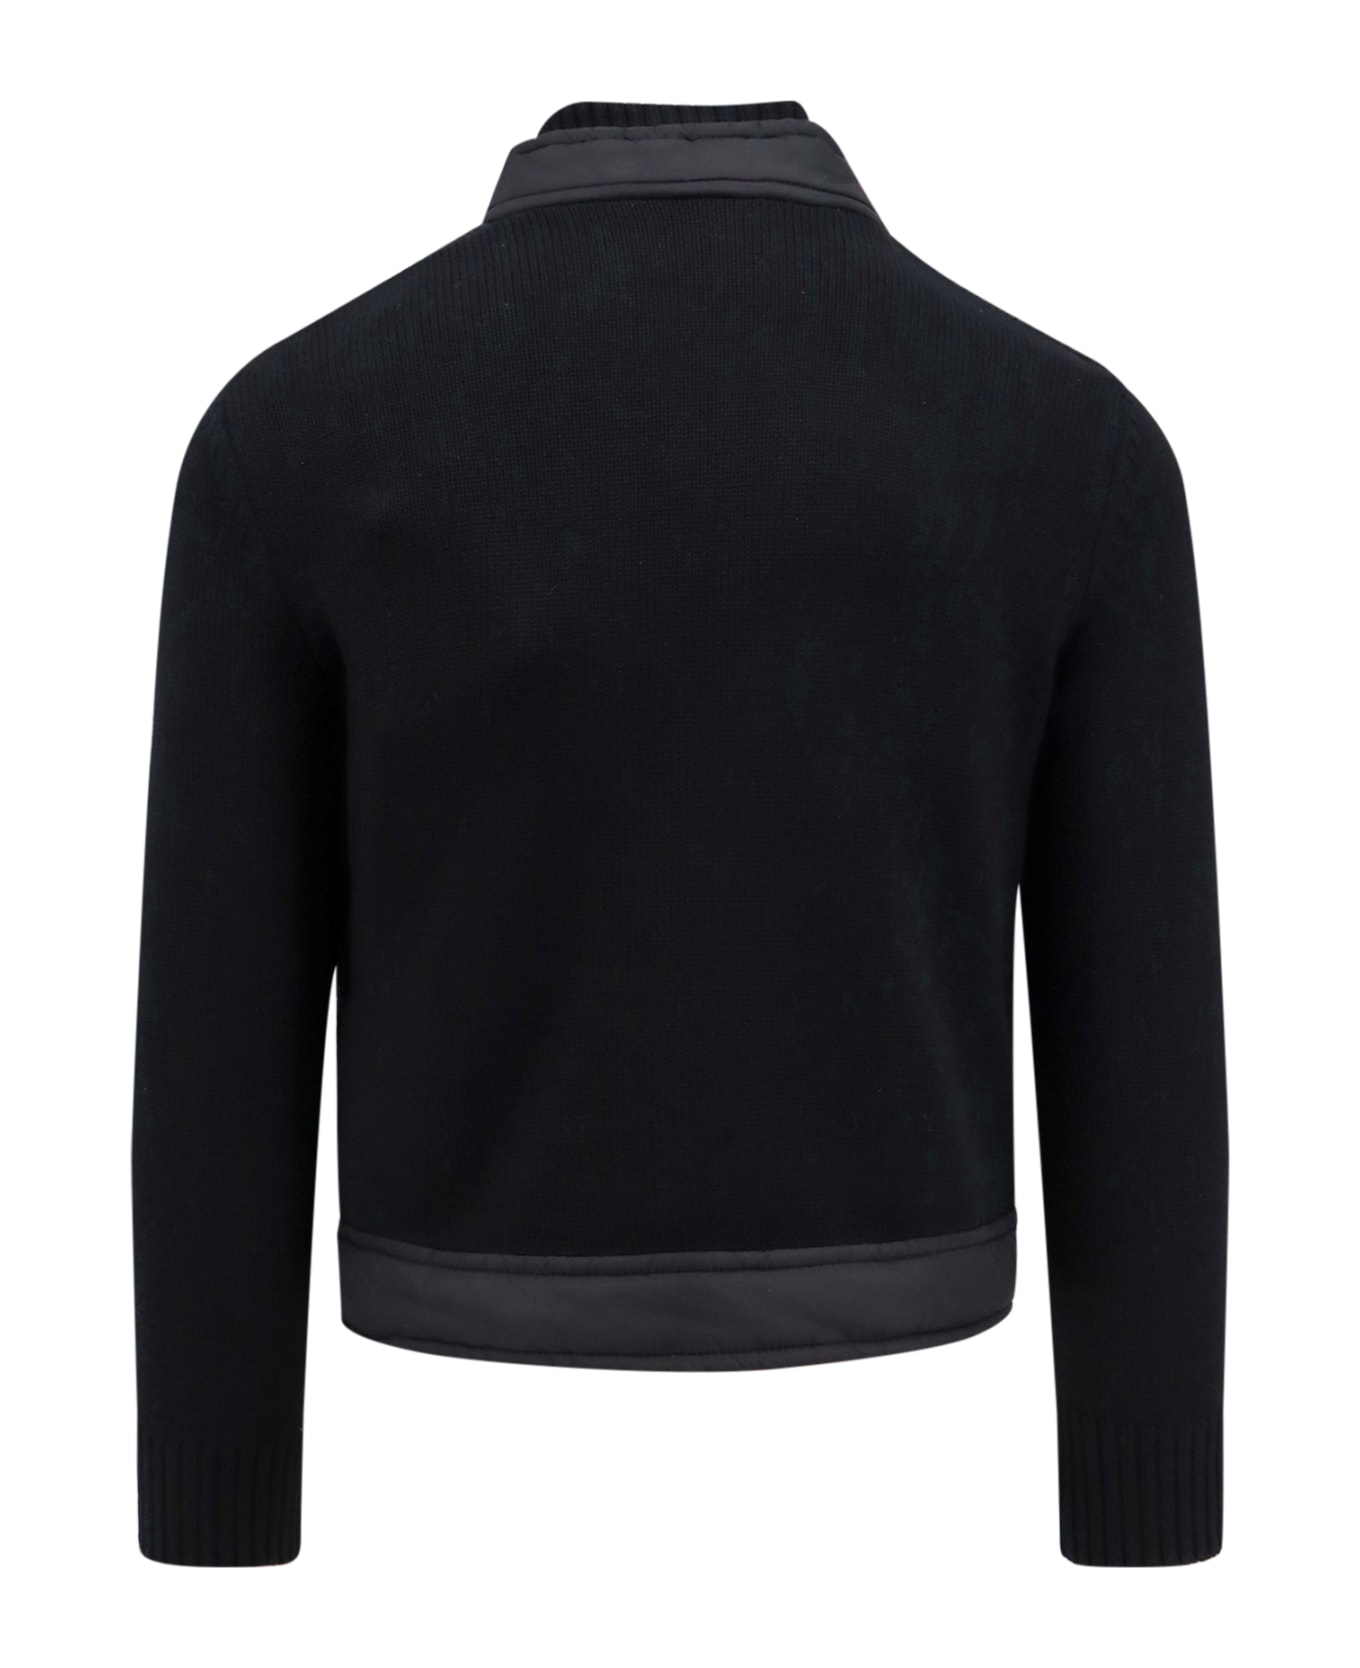 Moncler Grenoble Jacket - Black